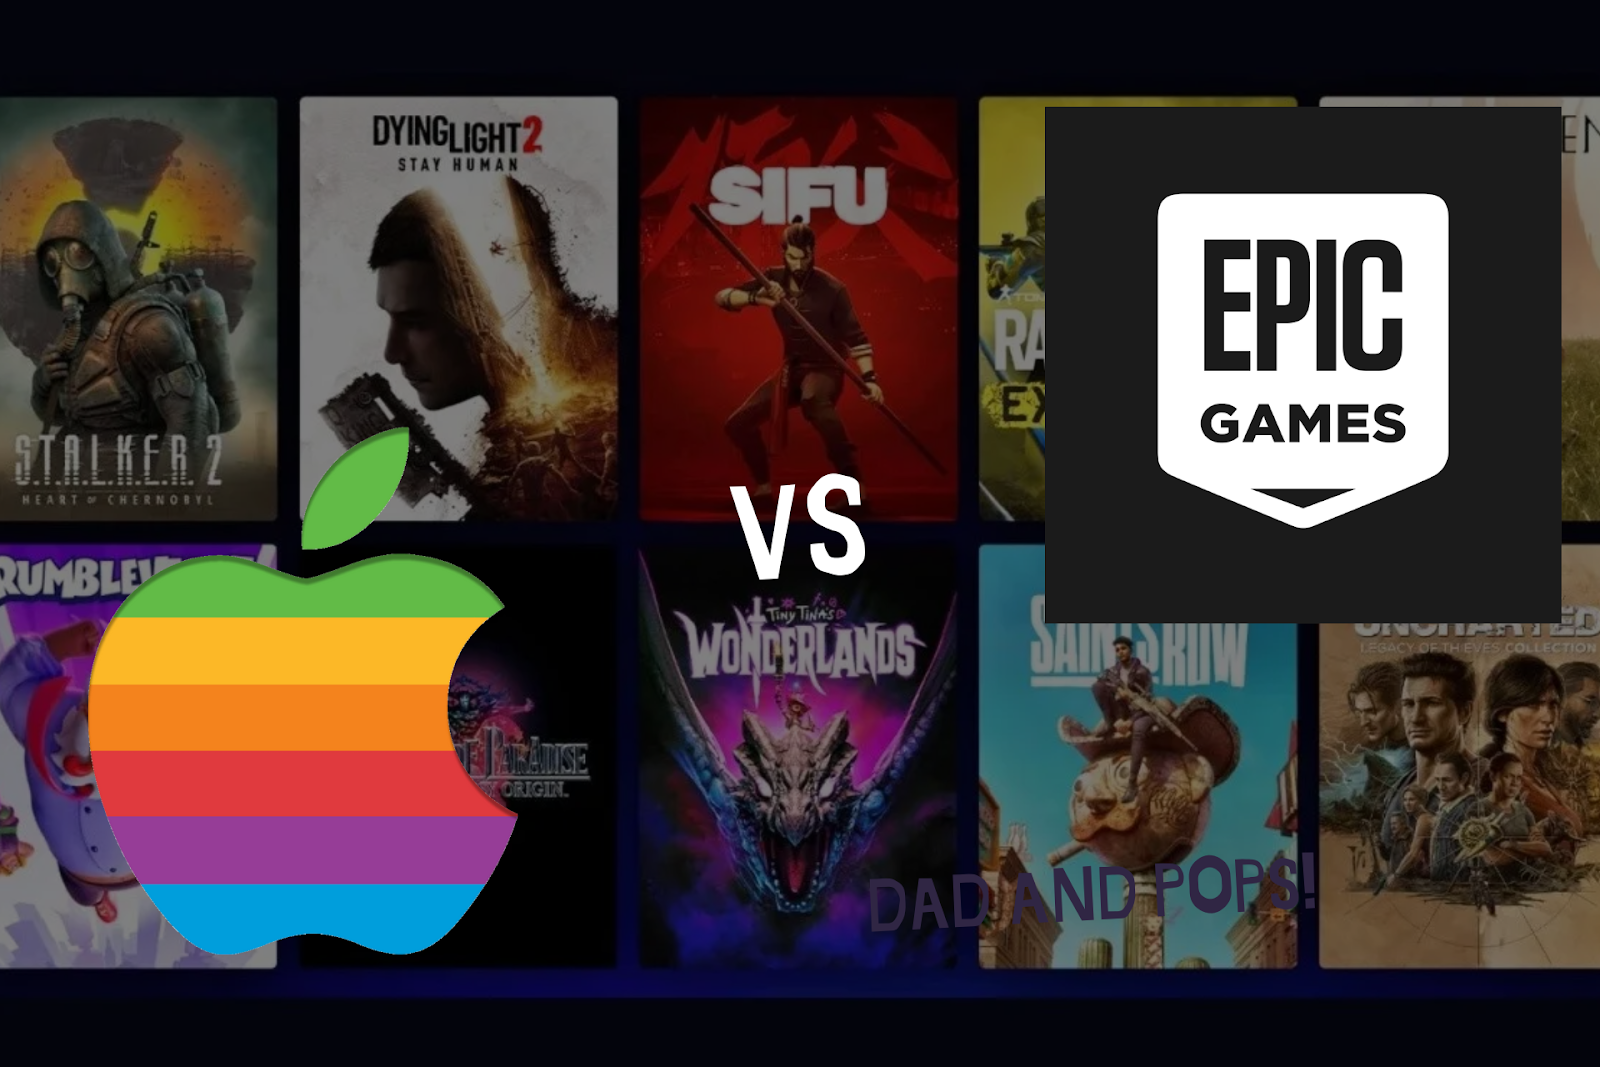 Los 10 Juicios Más Polémicos en la Industria Tecnológica de la Última Década: 1. Apple vs. Epic Games: La Batalla por las Comisiones en las Tiendas de Aplicaciones (2021)